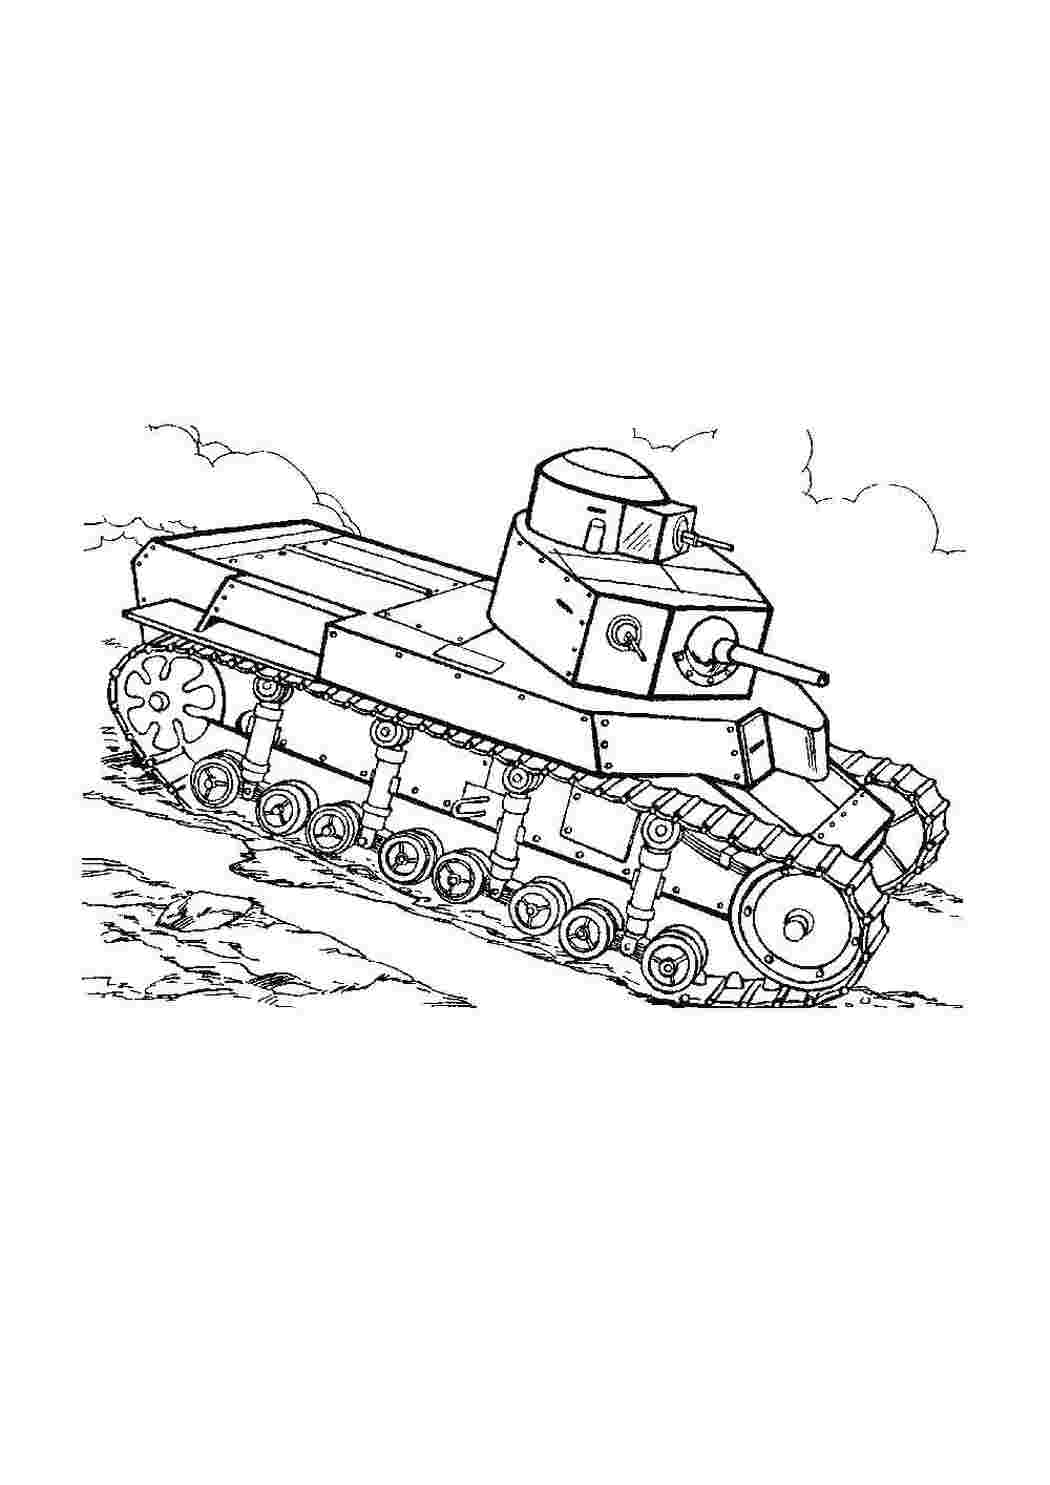 Раскраски Танк т-34 военные раскраски Военное, машины, танк, оружие